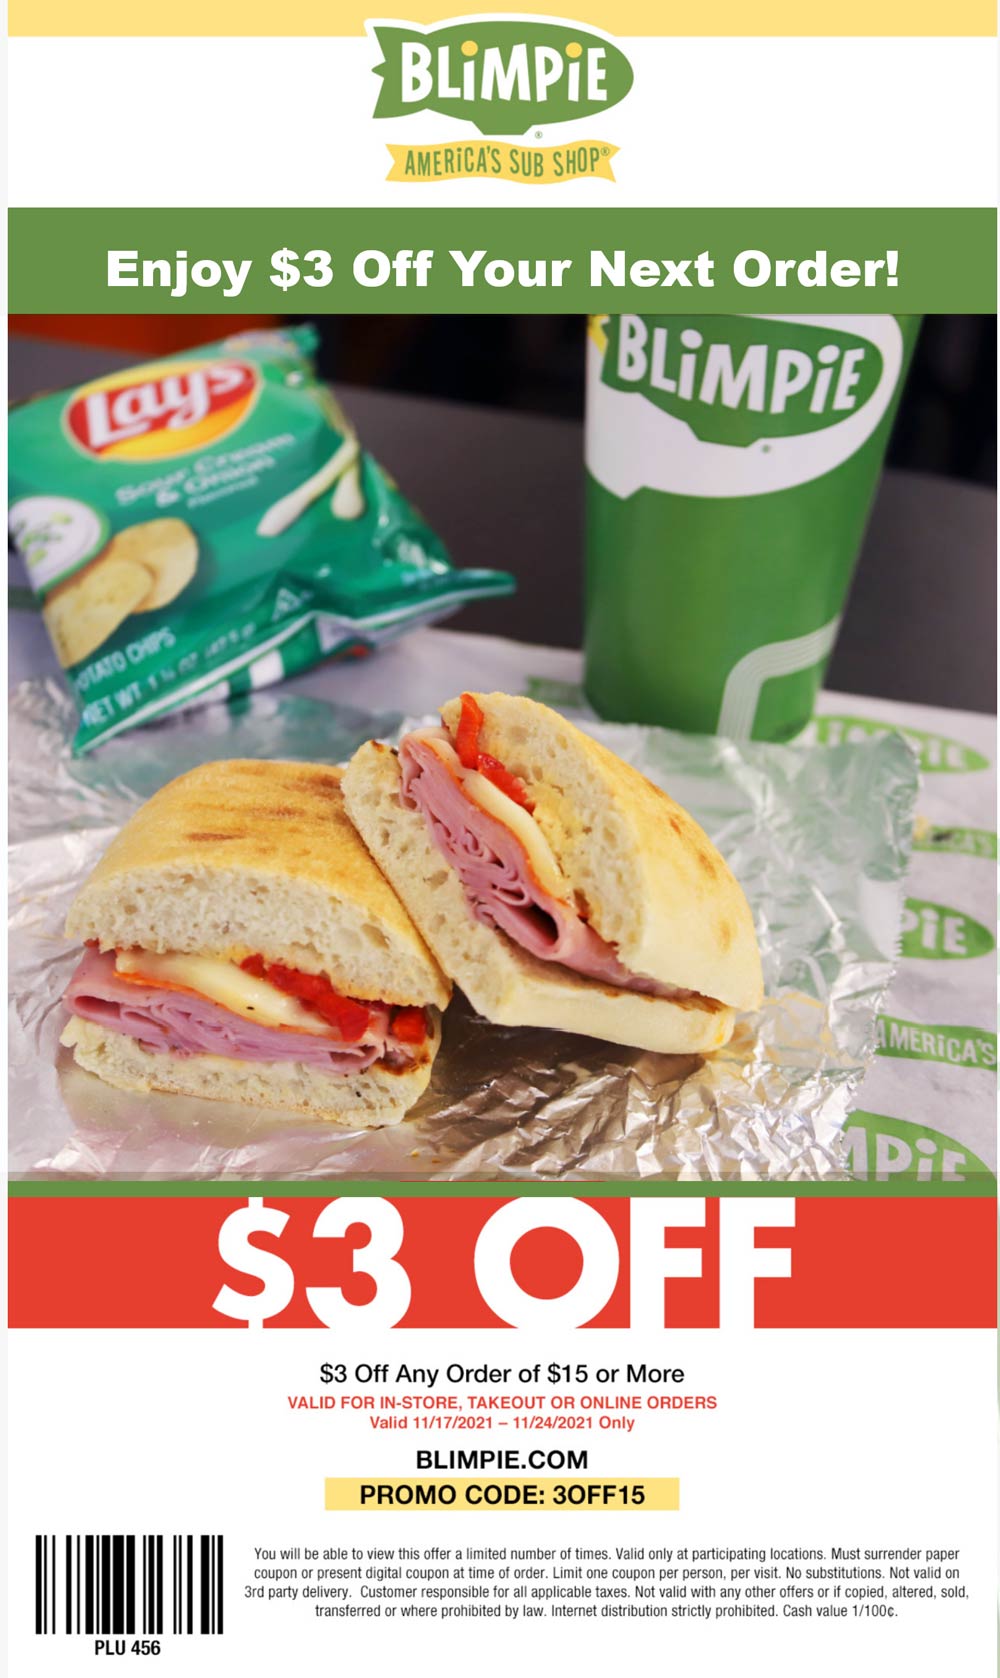 Blimpie restaurants Coupon  $3 off $15 at Blimpie sandwich shops via promo code 3OFF15 #blimpie 